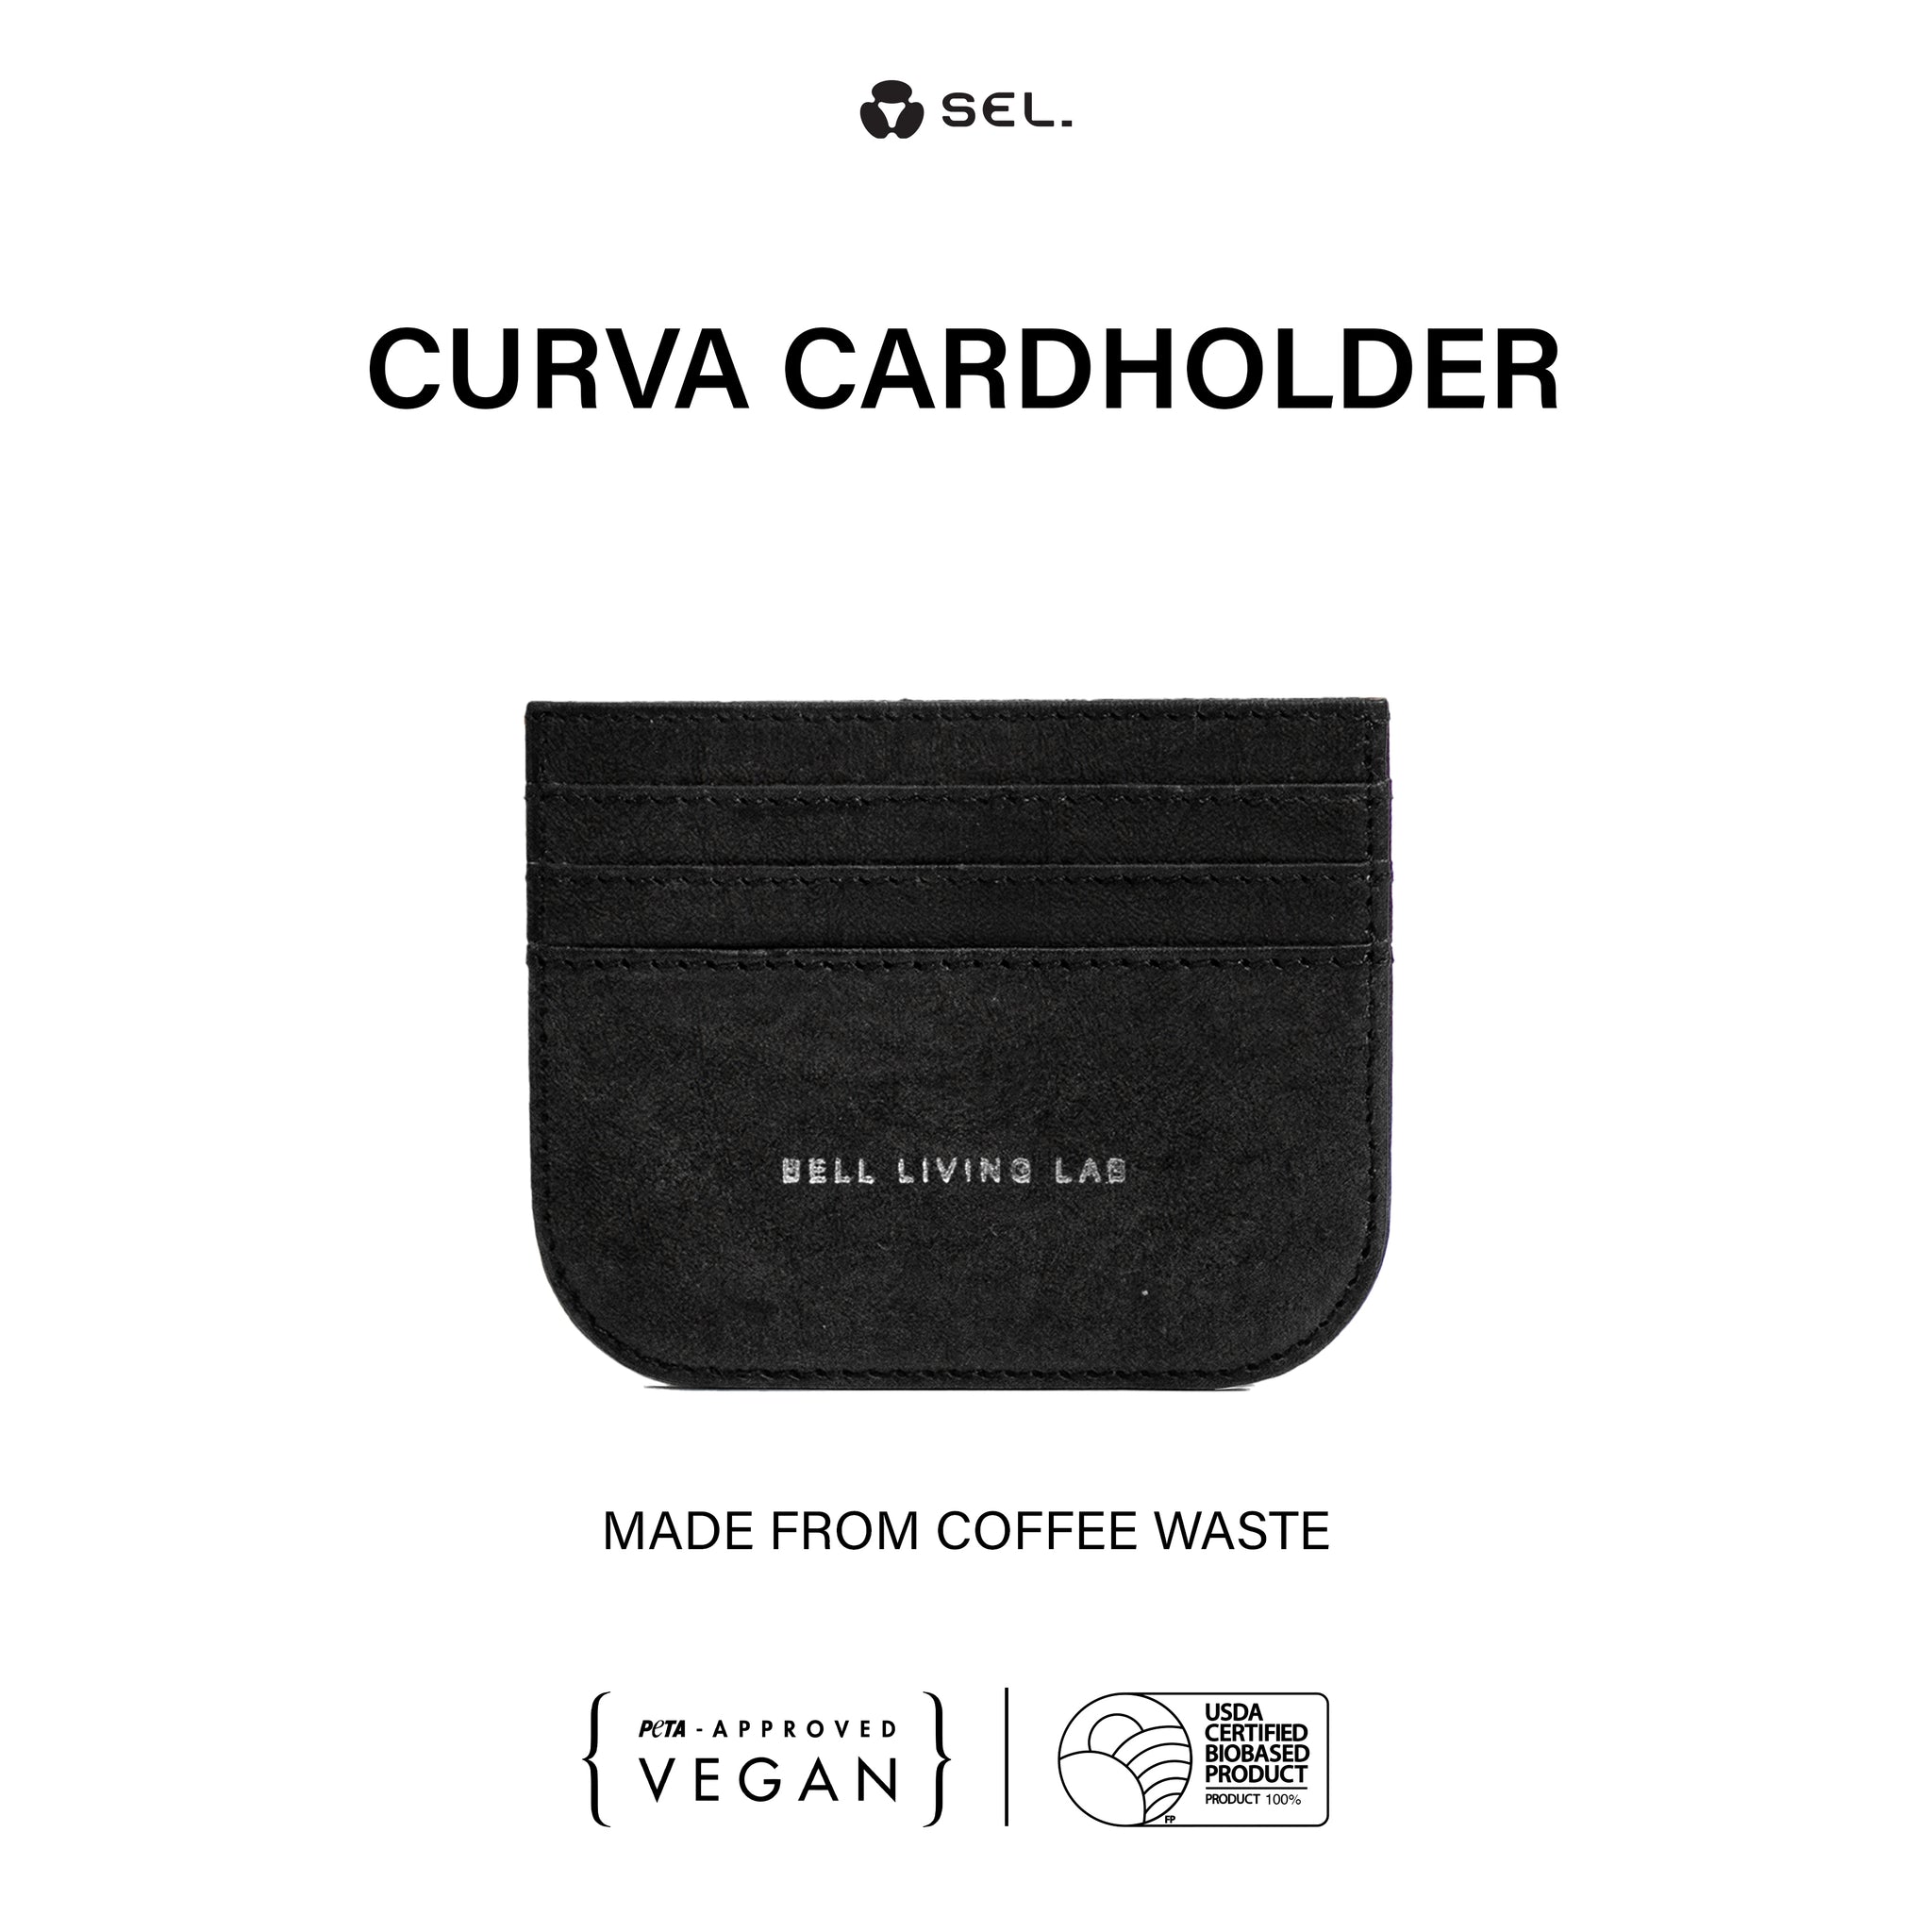 Curva Cardholder